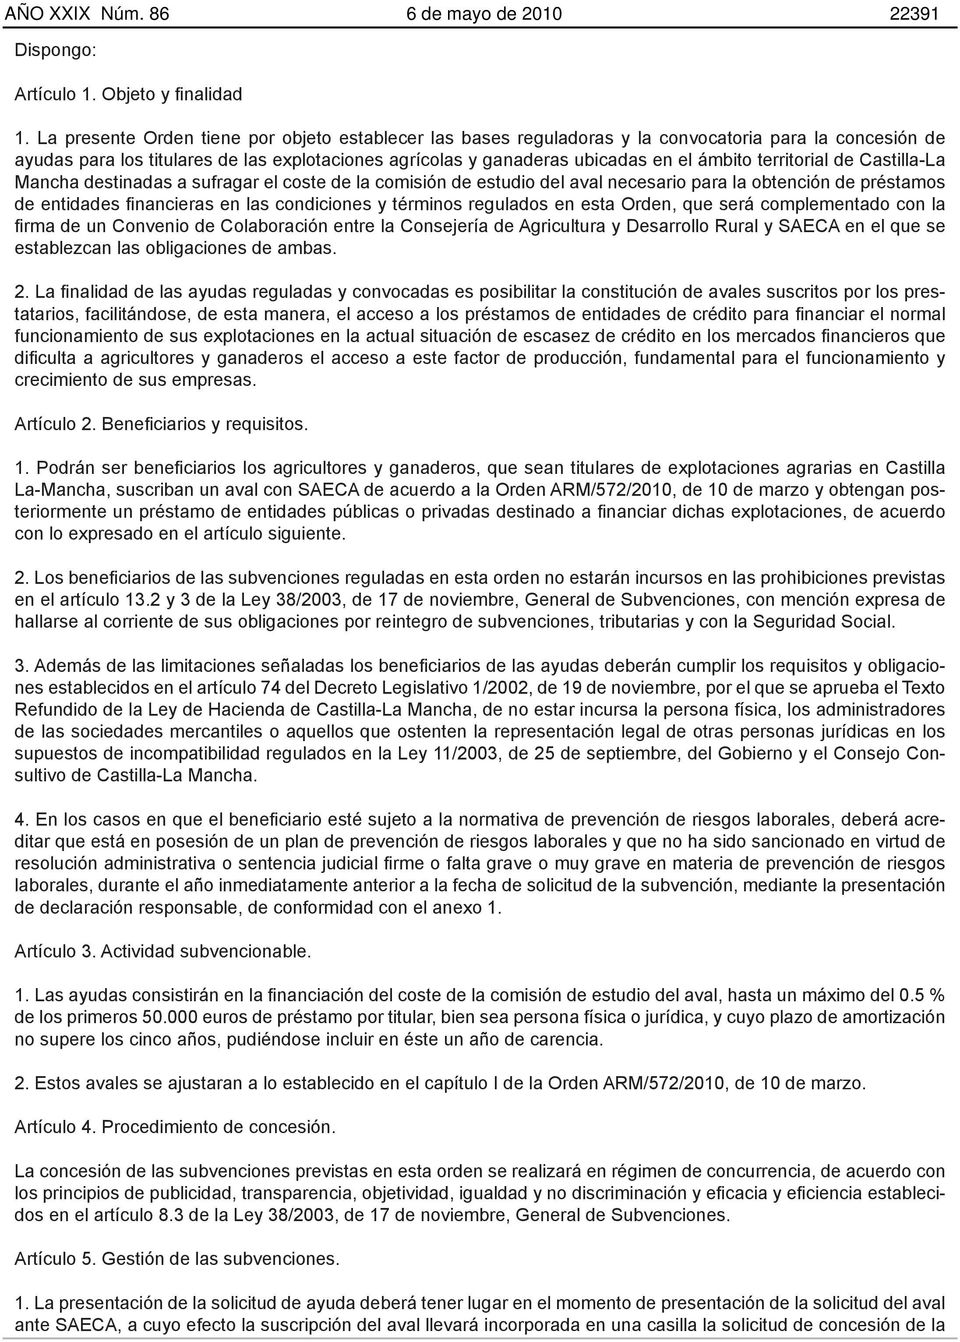 territorial de Castilla-La Mancha destinadas a sufragar el coste de la comisión de estudio del aval necesario para la obtención de préstamos de entidades financieras en las condiciones y términos